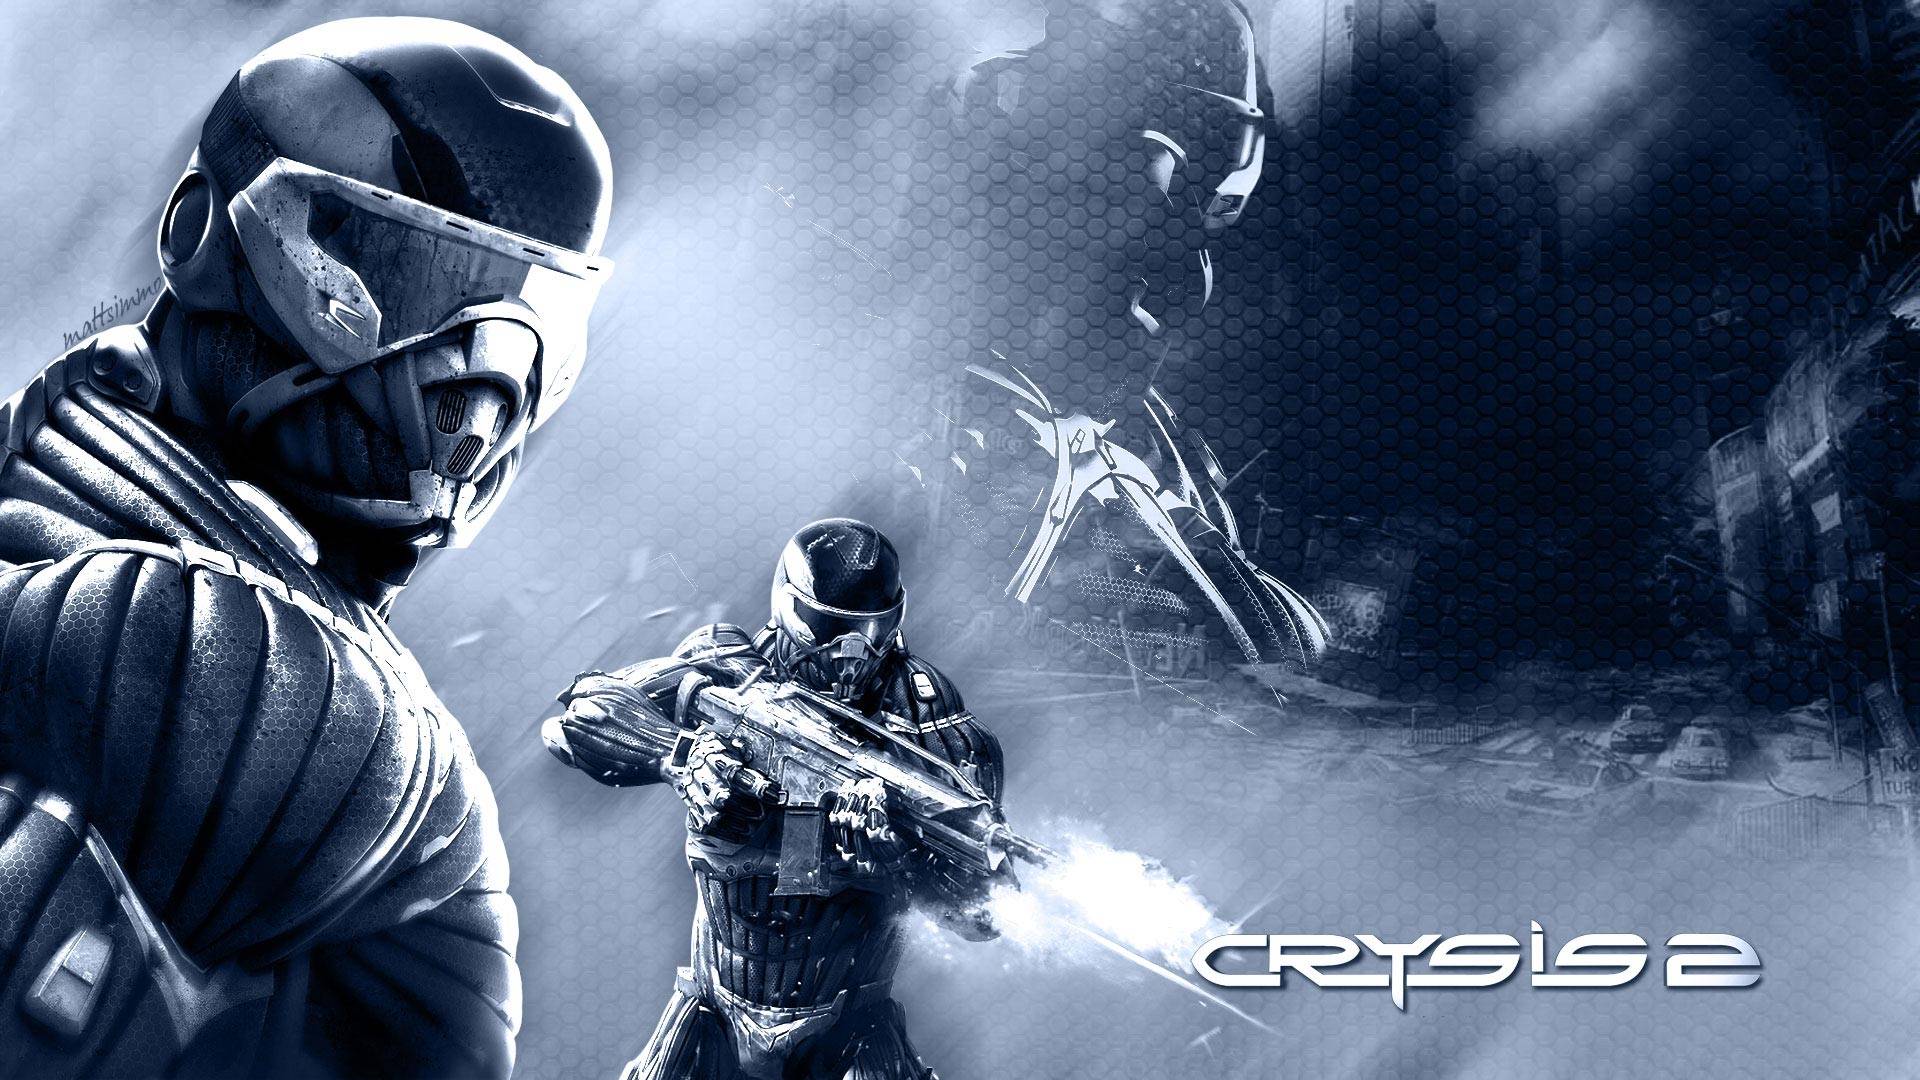 Crysis 2 Wallpaper in full 1080P HD « GamingBolt.com: Video Game